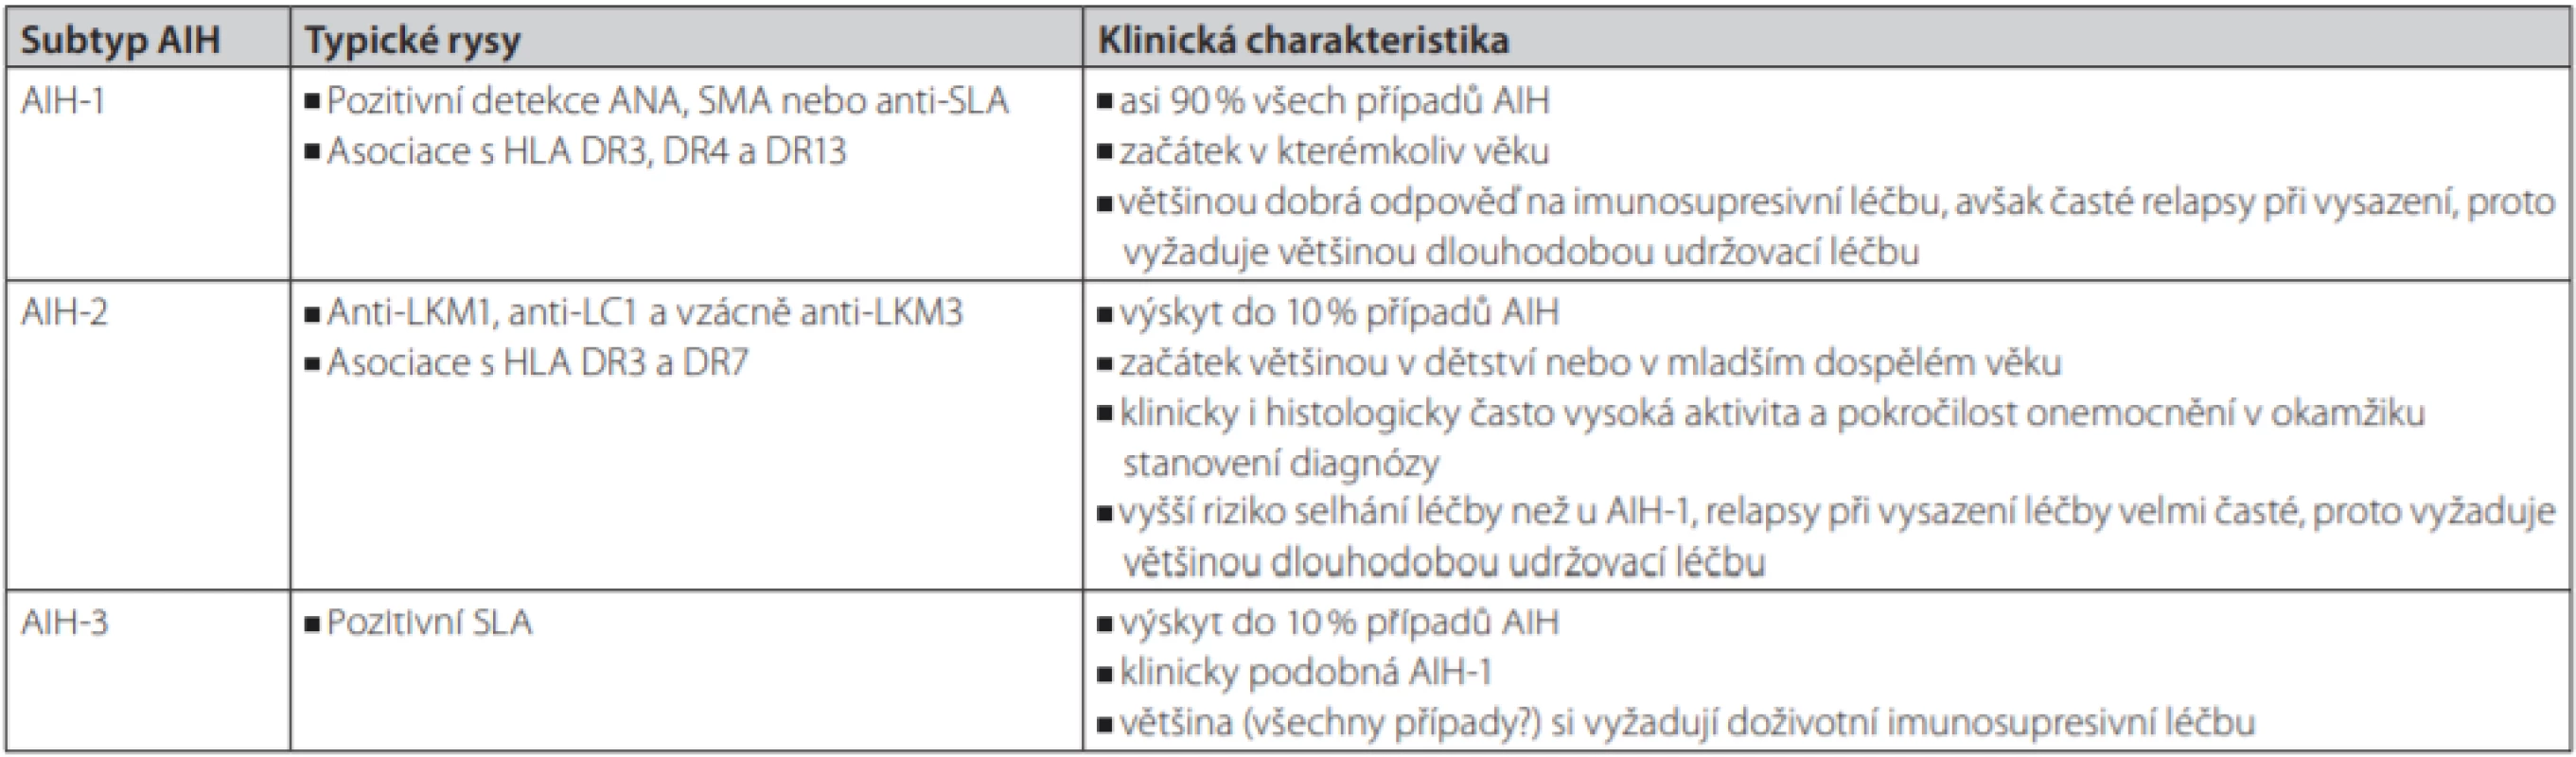 Tradiční klasifikace a charakteristika jednotlivých typů AIH